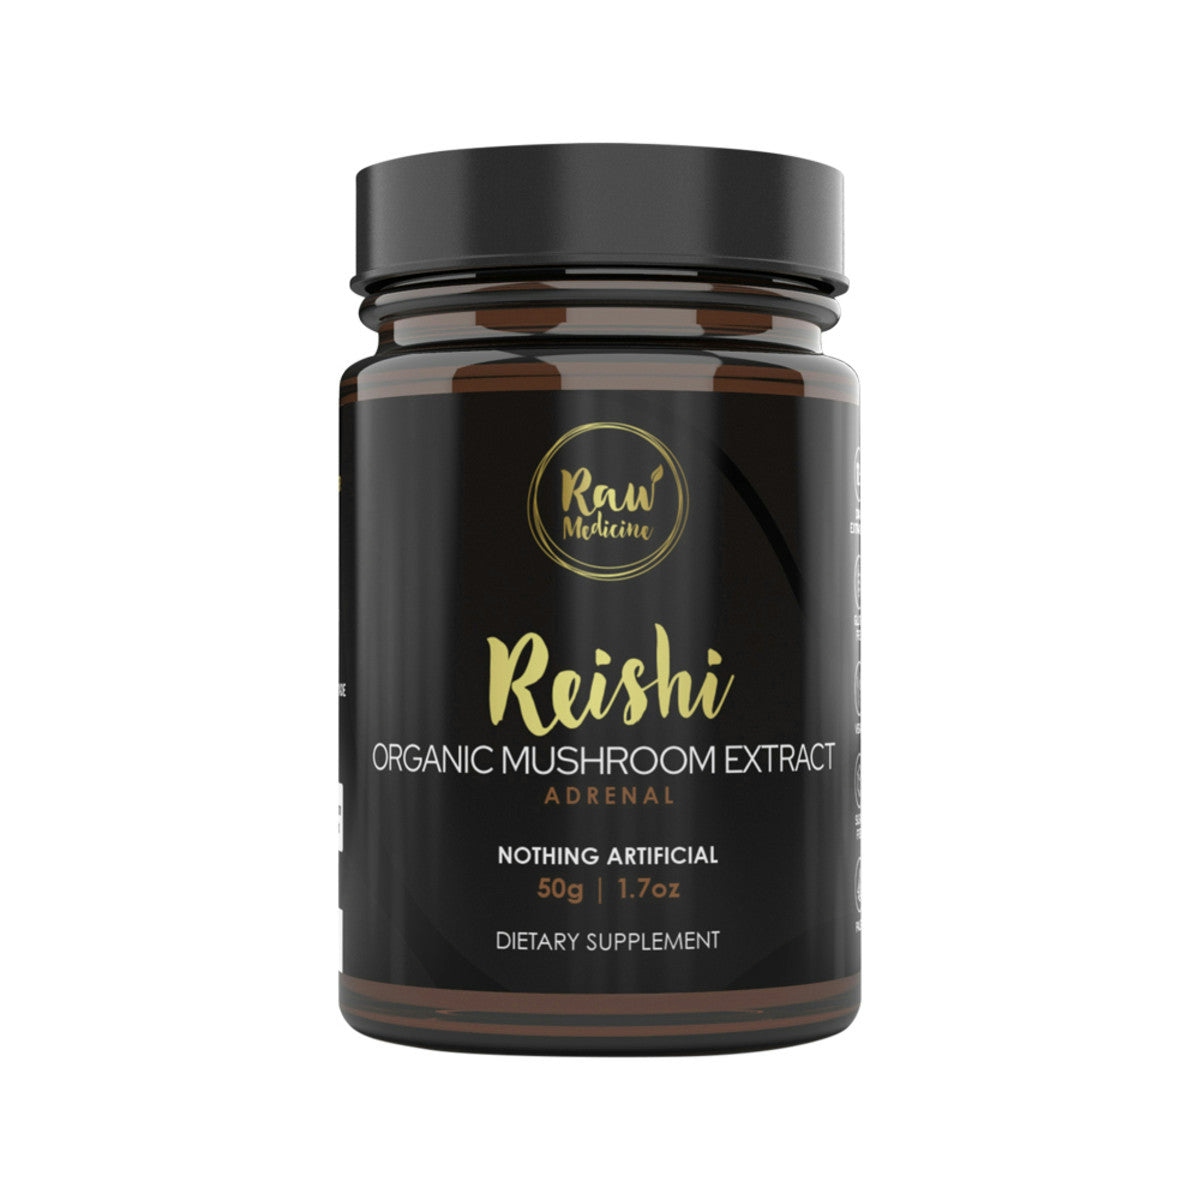 image of Raw Medicine Organic Mushroom Extract Reishi 50g on white background